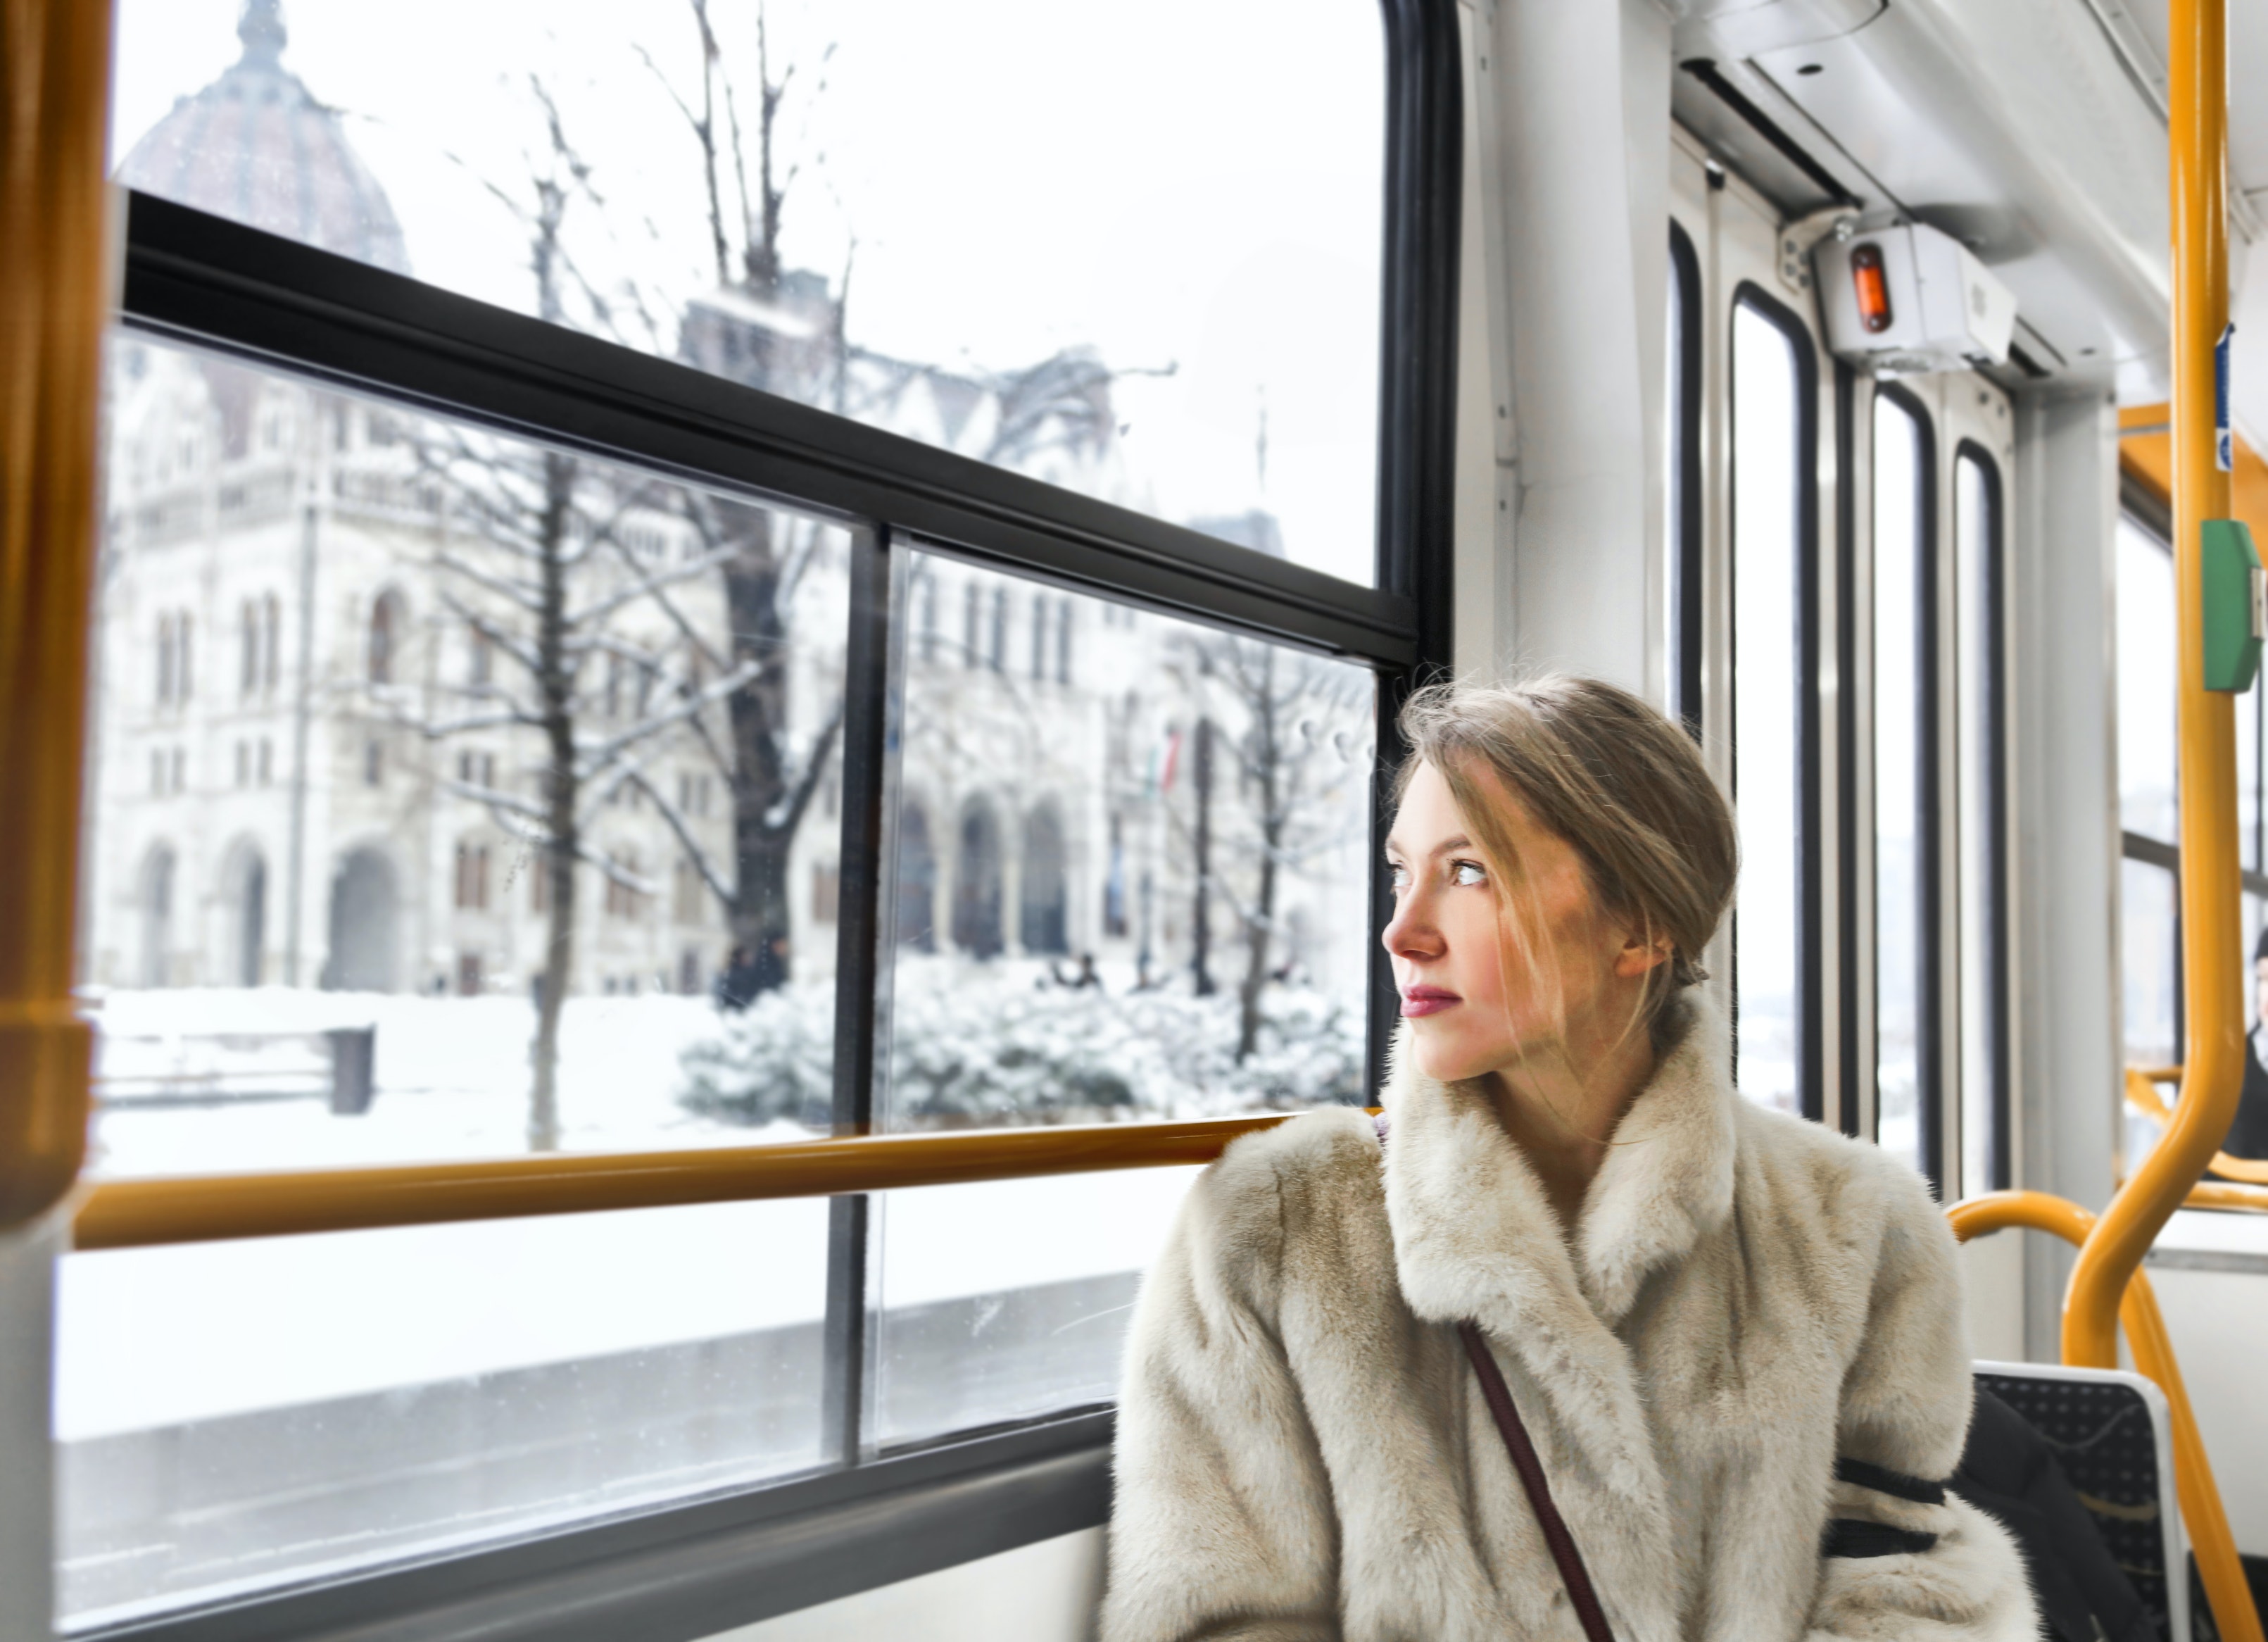 Women in furry coat on train